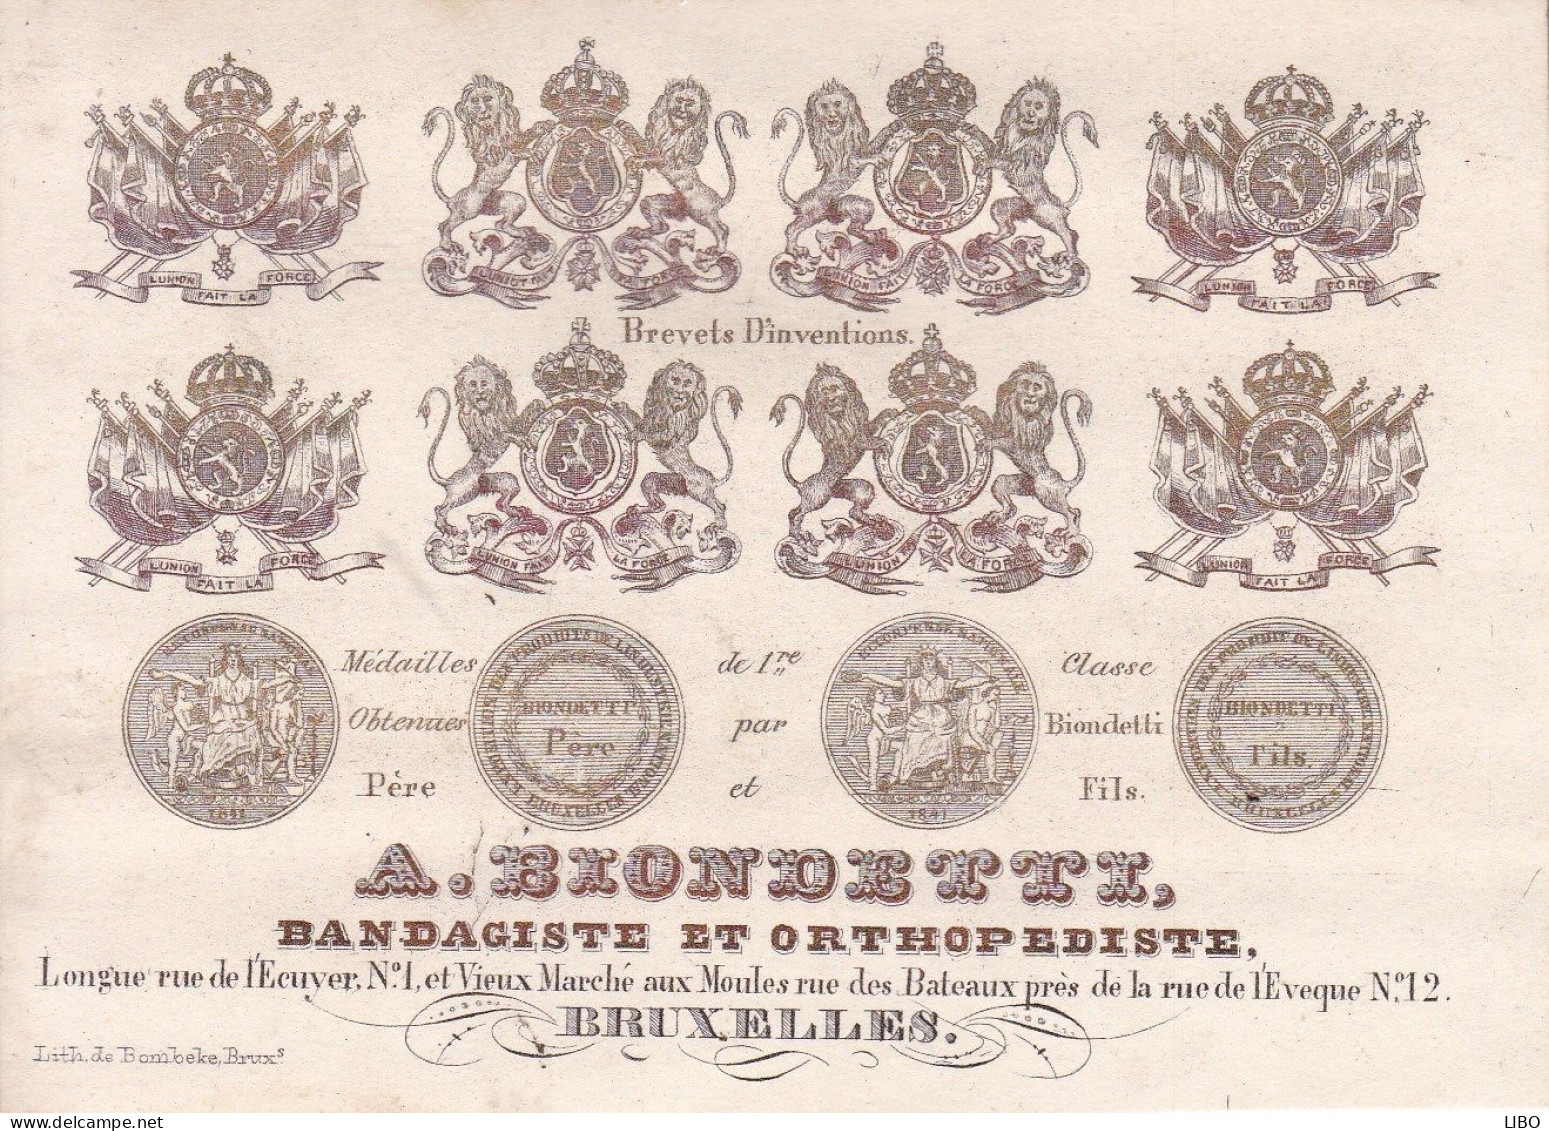 BRUXELLES BLONDETTZ Bandagiste Orthopédiste Vieux Marché Aux Moules Carte Porcelaine Années 1850-1860 - Porseleinkaarten